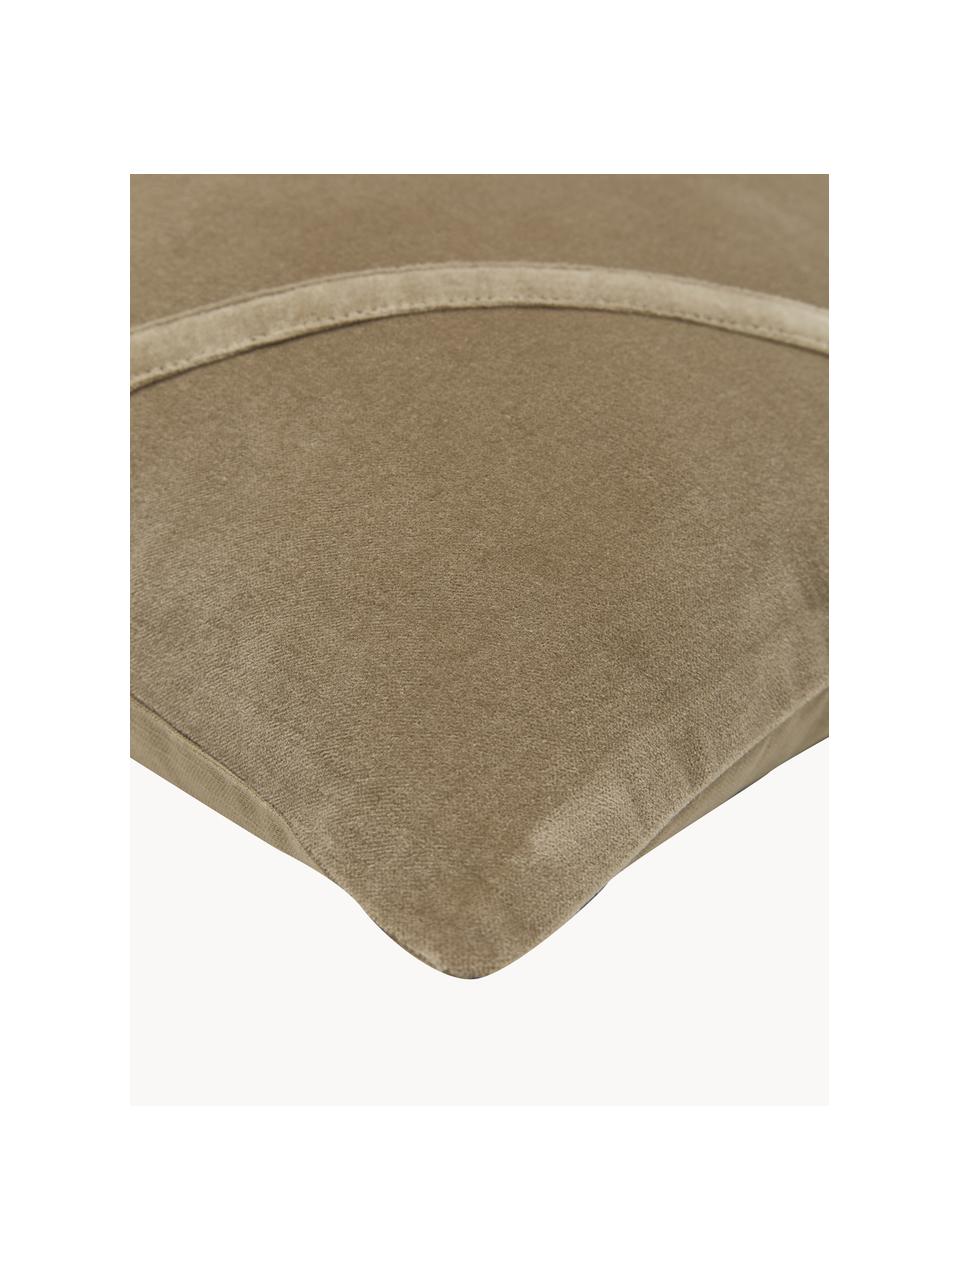 Copricuscino in velluto color sabbia Malva, Retro: 100% cotone, Color sabbia, Larg. 50 x Lung. 50 cm